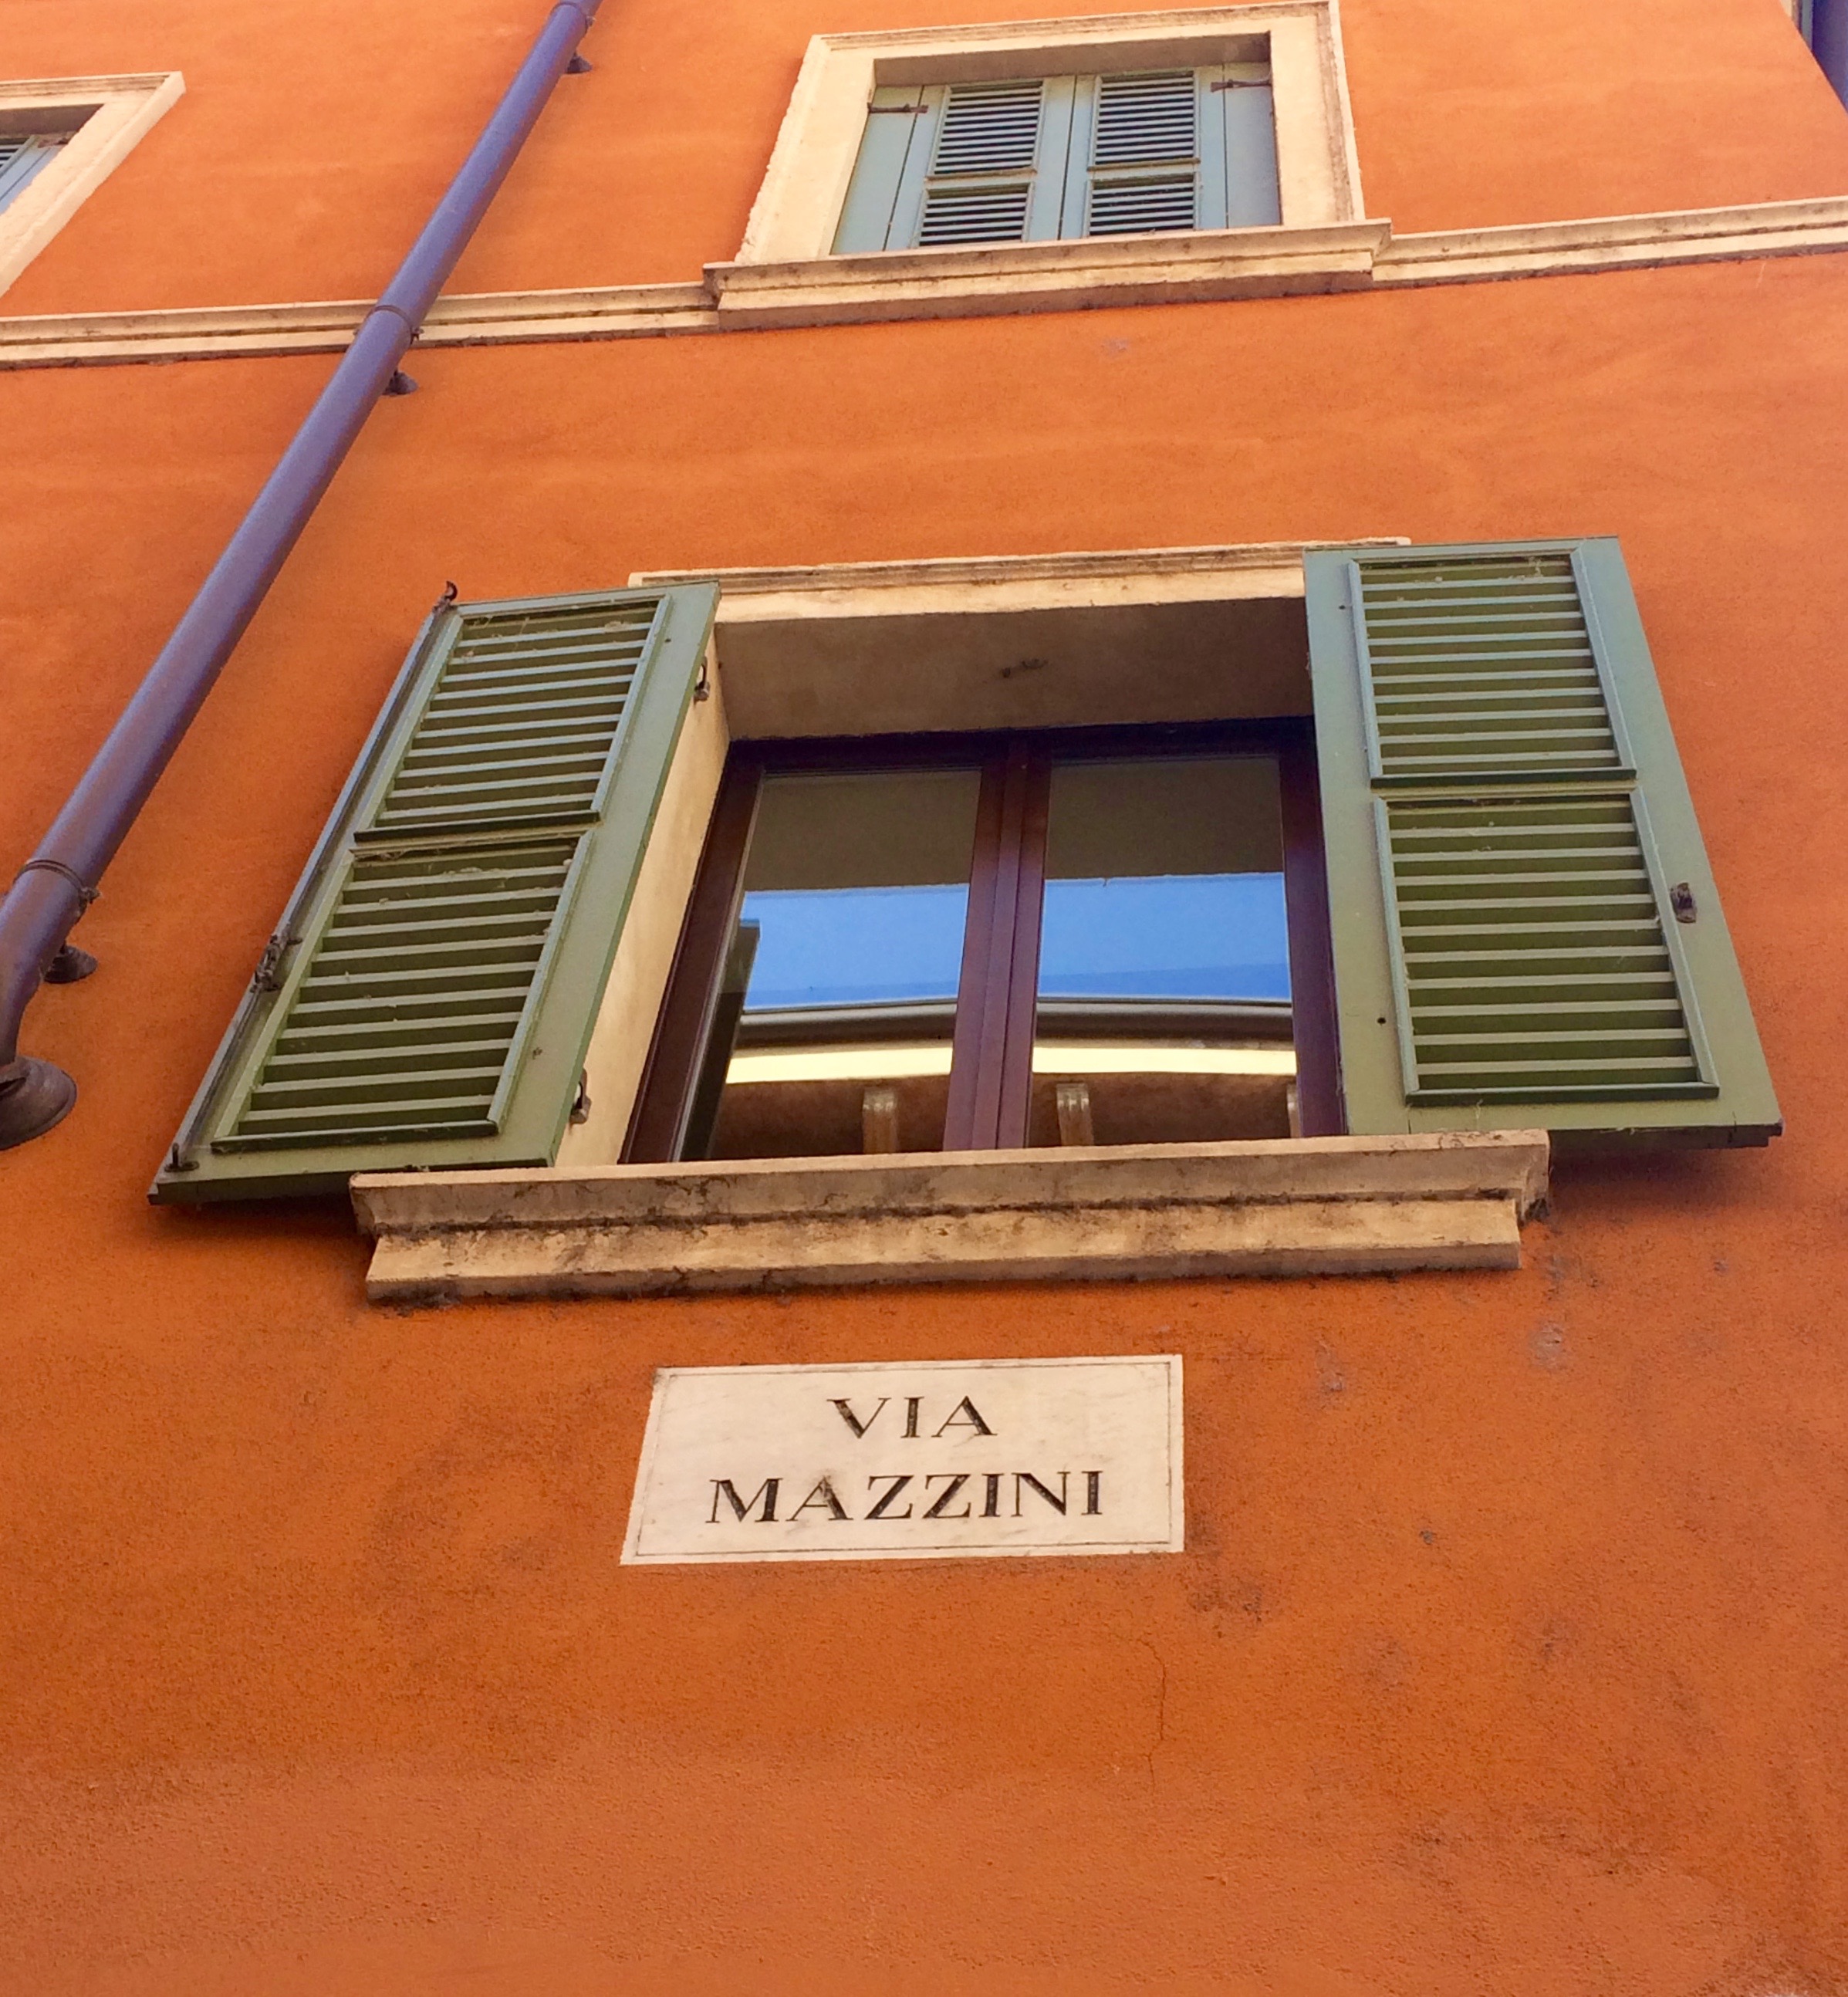 Via Mazzini